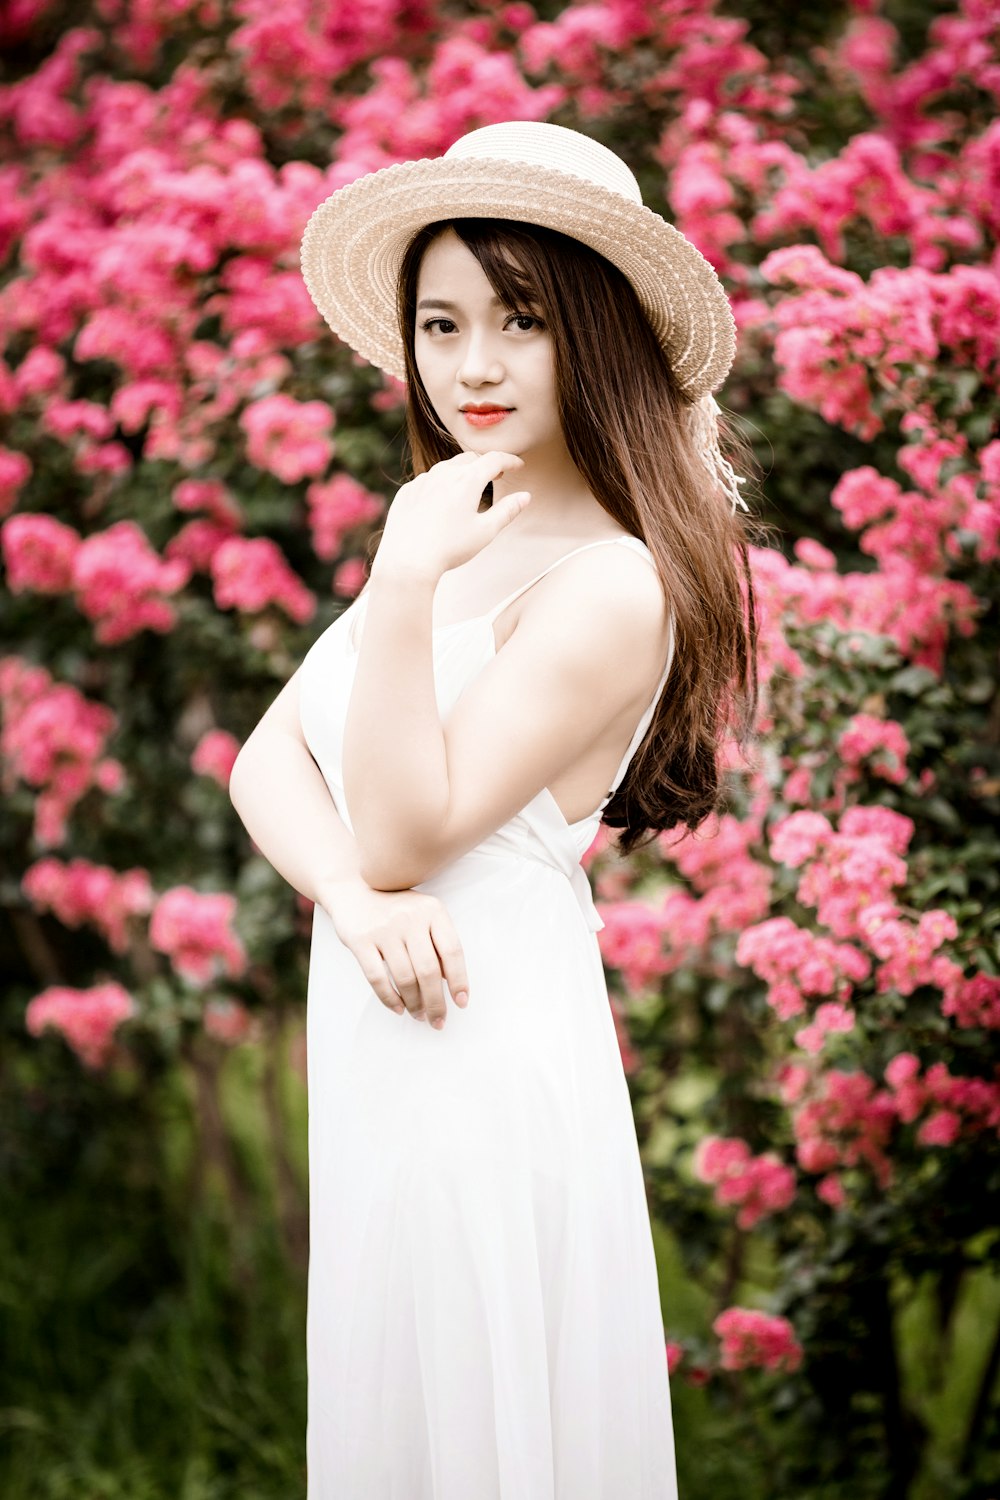 donna che indossa il vestito in piedi accanto ai fiori rosa